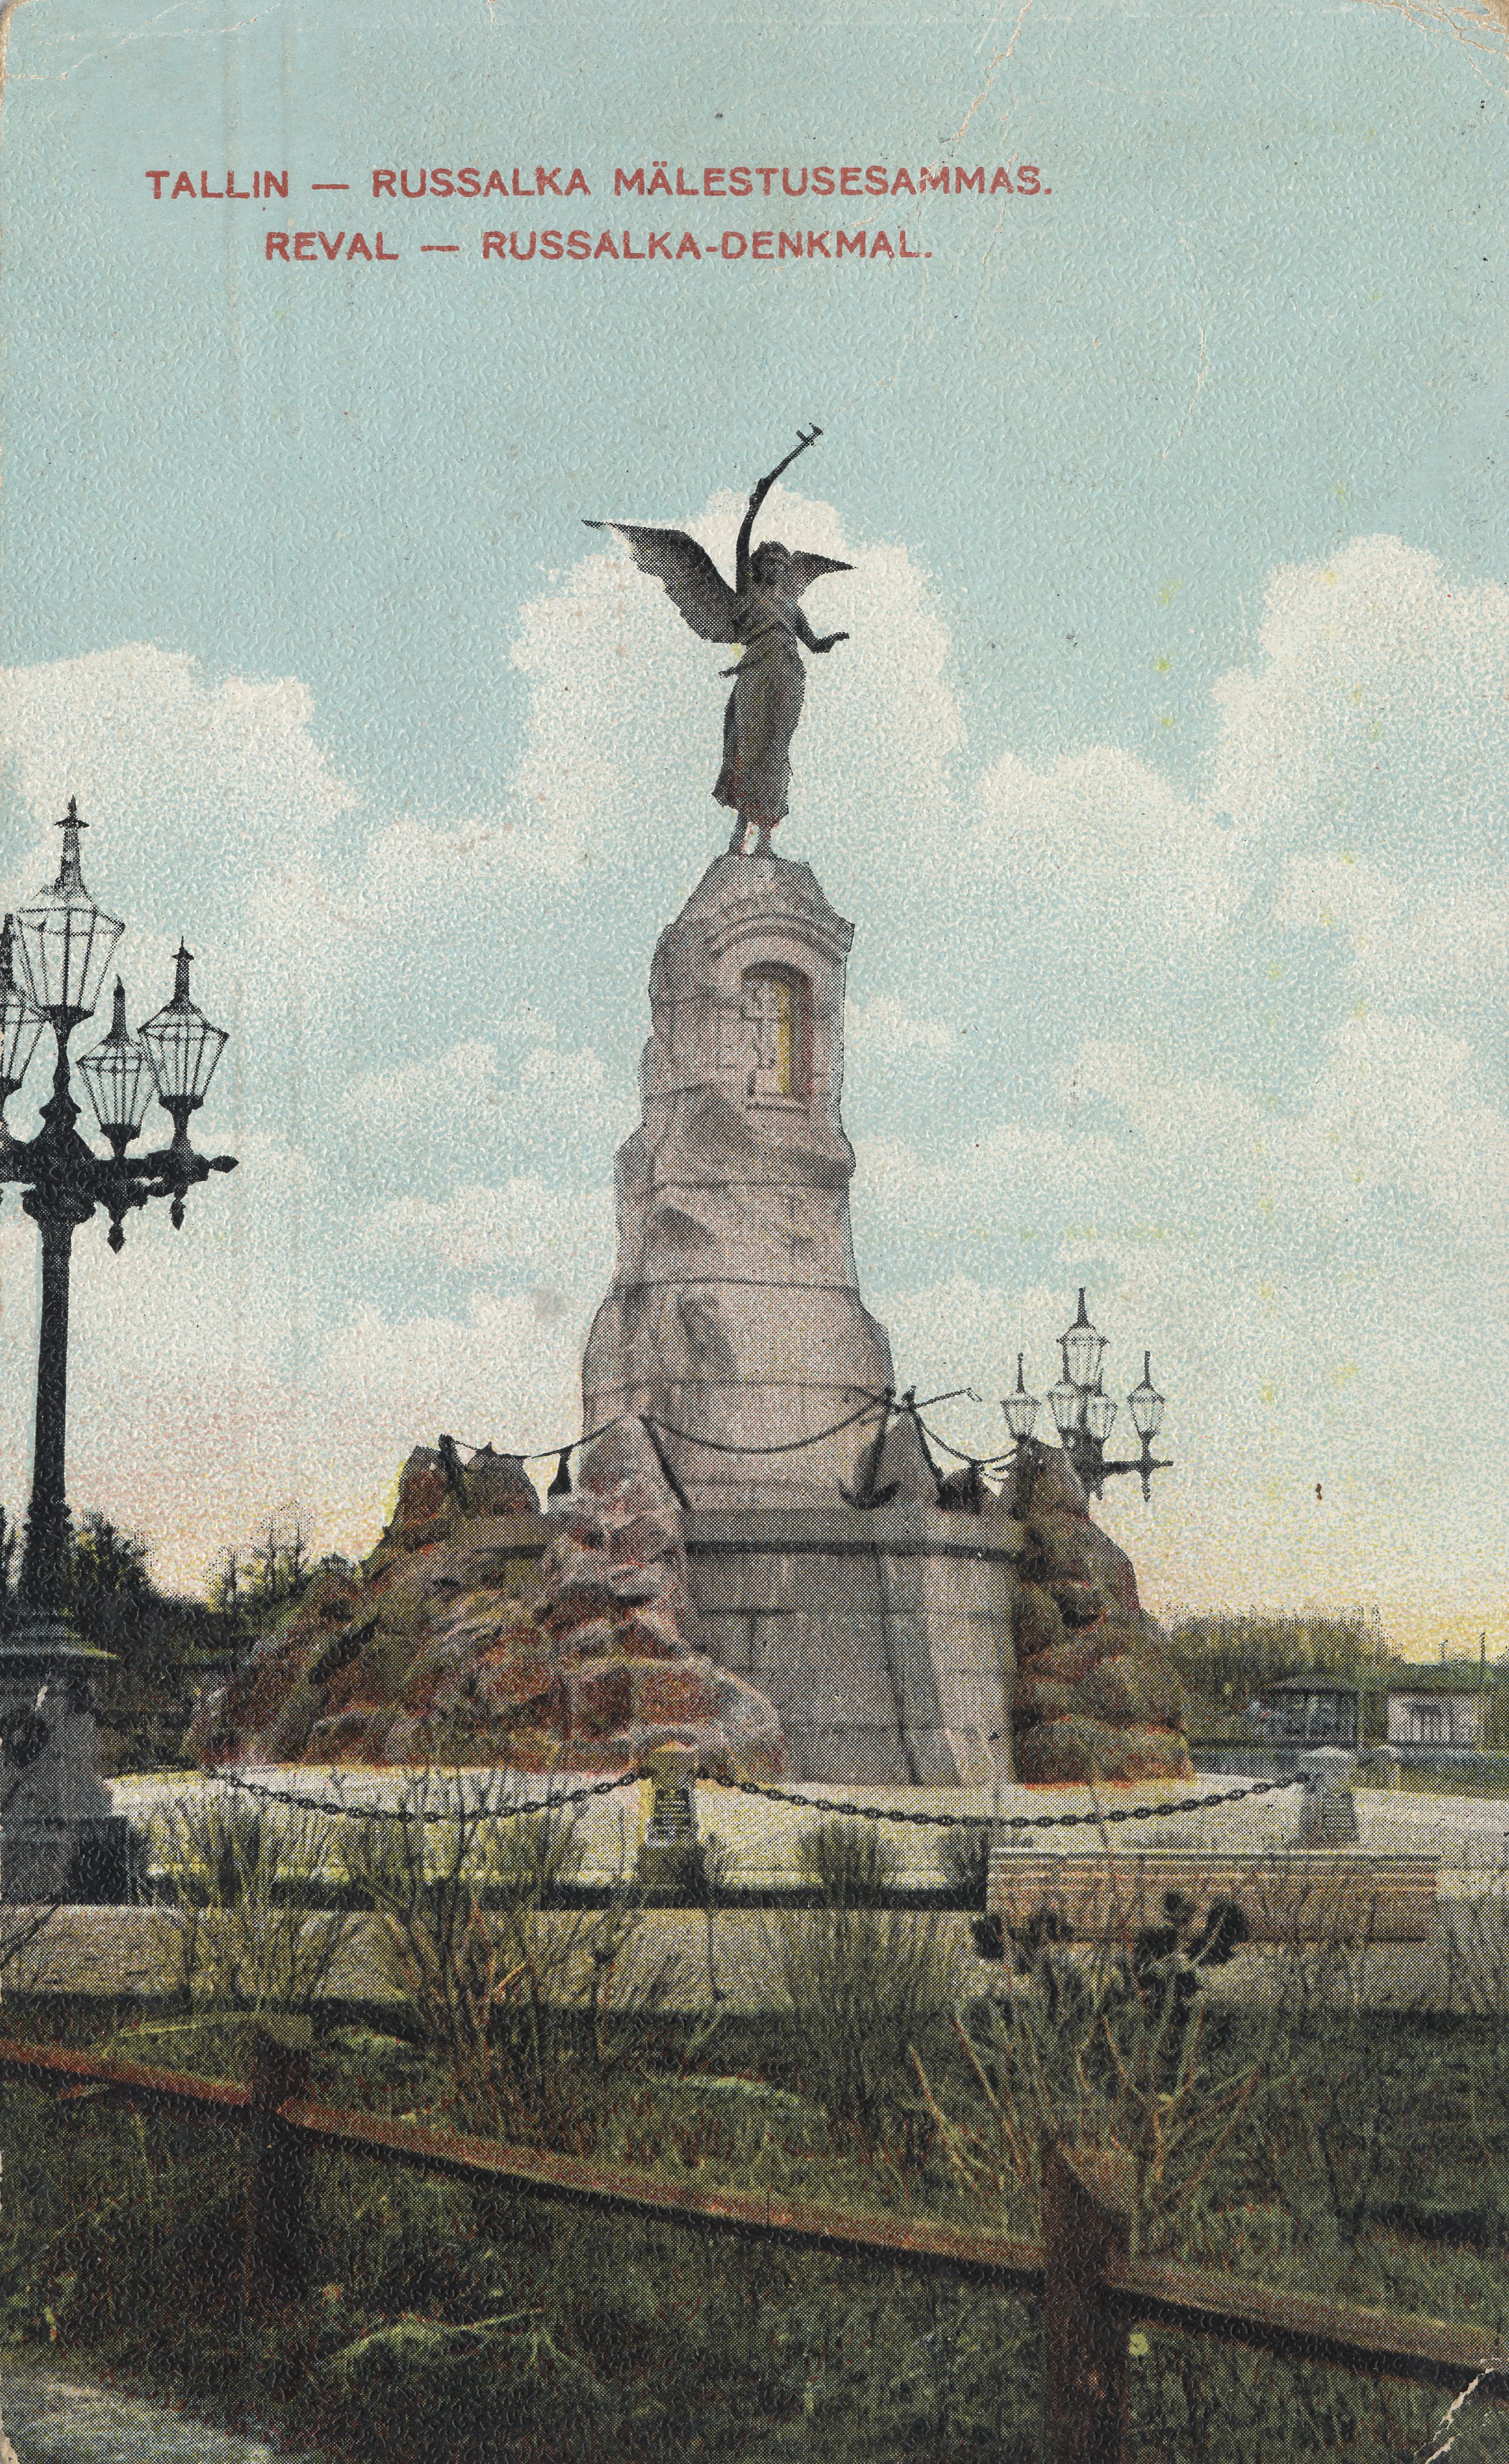 Tallin[n] : Russalka monument = Reval : Russalka-Denkmal